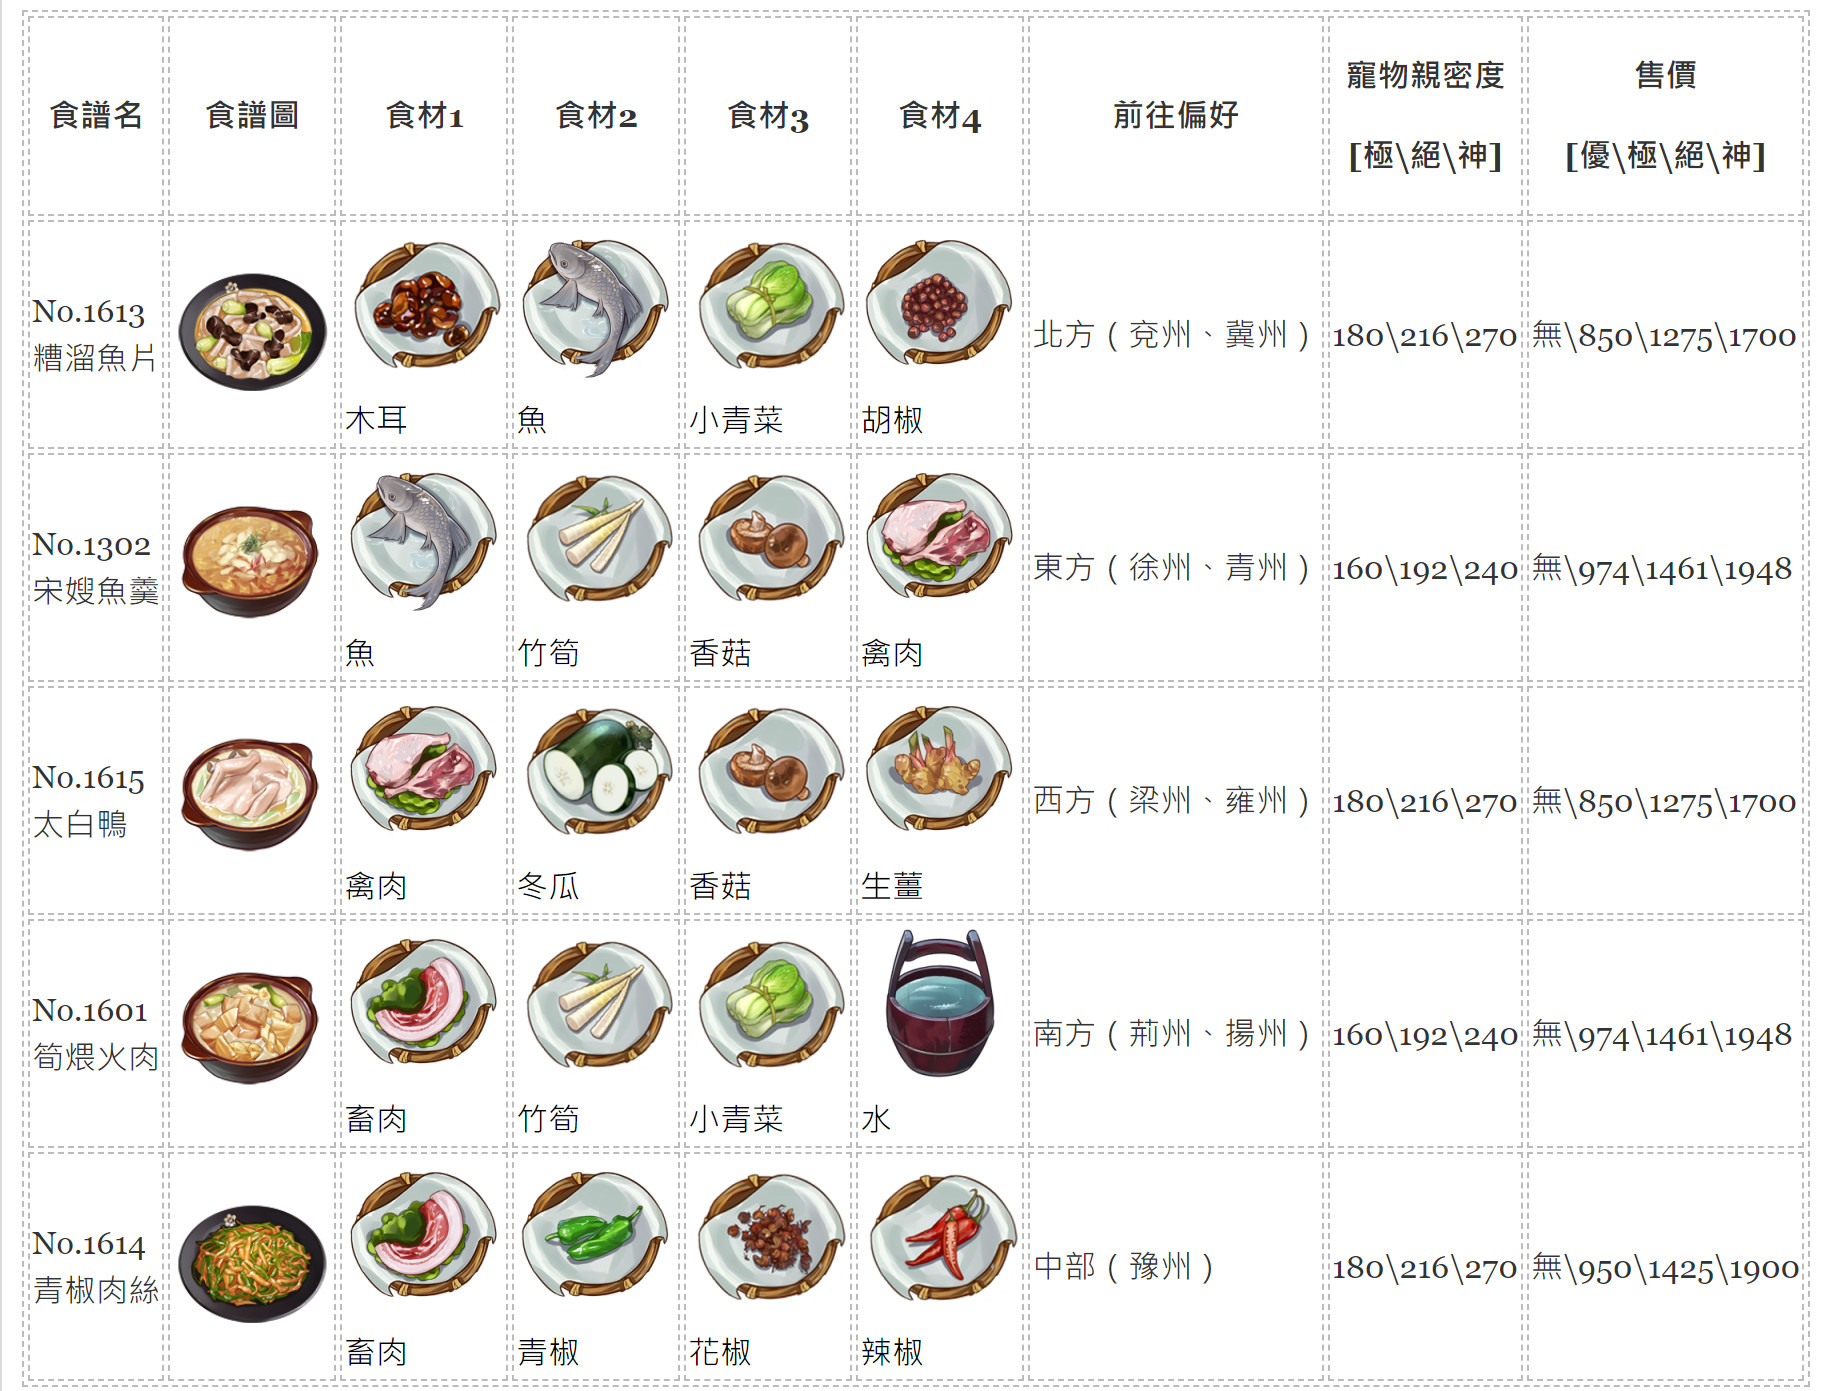 【江湖悠悠】料理食譜大全，1~11完美料理配方、普通食材食譜、旅行方向、寵物糧親密度、料理售價。 - 完美 - 敗家達人推薦